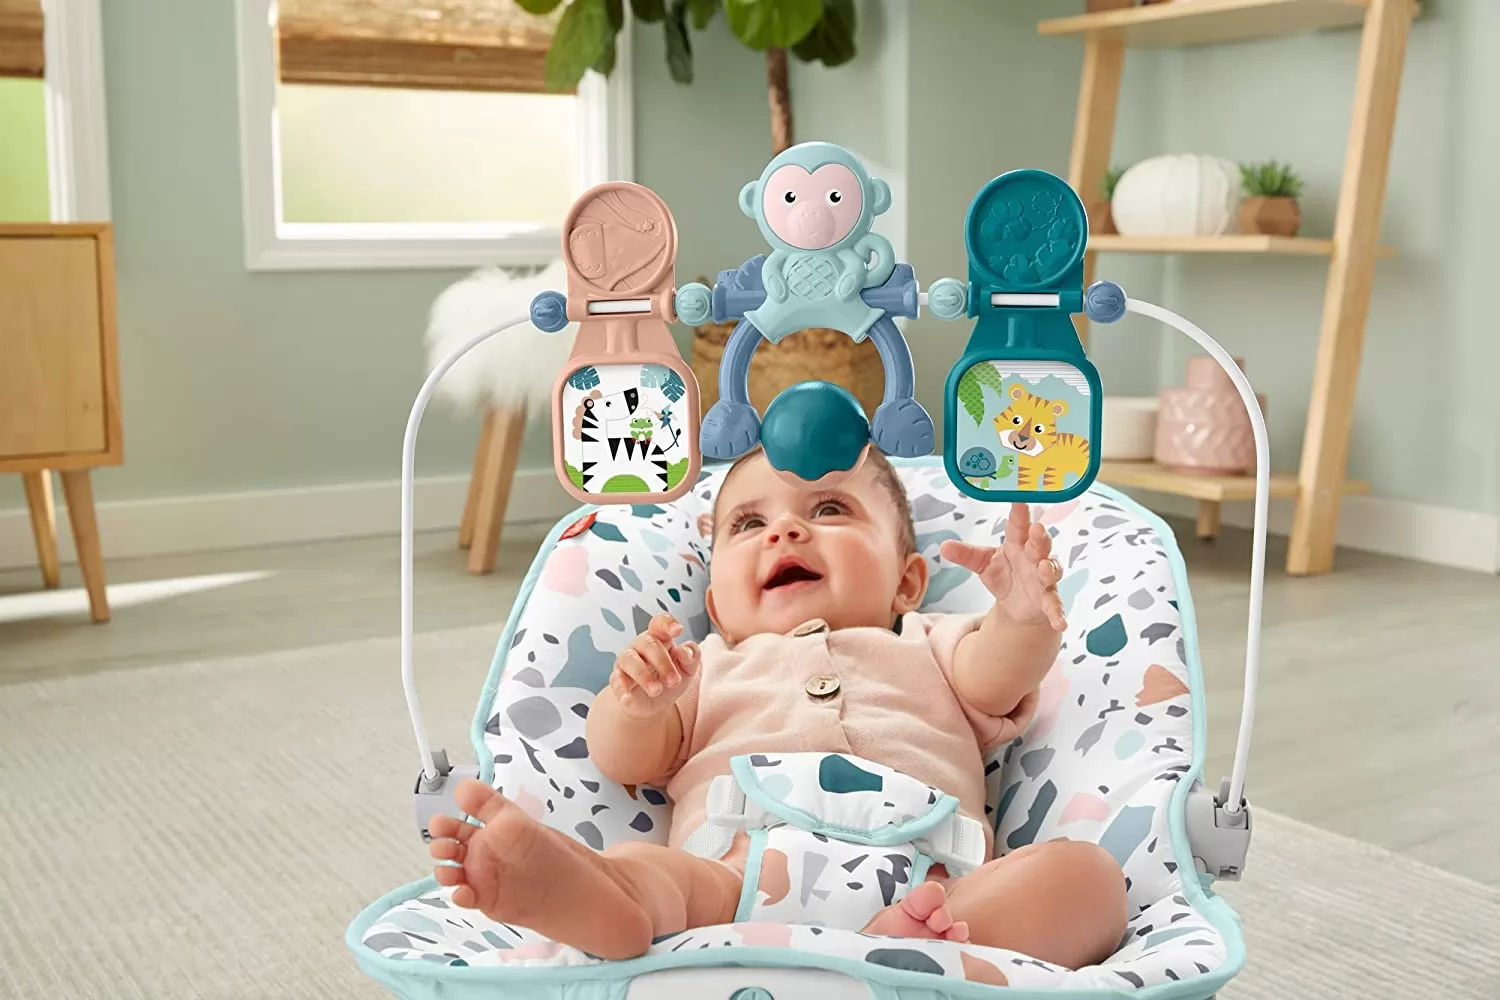 Beşik, ister evde ister arabada olsun, bebeğinizi rahatça taşıyıp dinlendirebileceğiniz, bebeğinizin 1-2 saat vakit geçirmesini sağlayan bir bebek koltuğu çeşididir. Bu tip koltuk sayesinde bebeğinizin bir anne gibi kucağına 